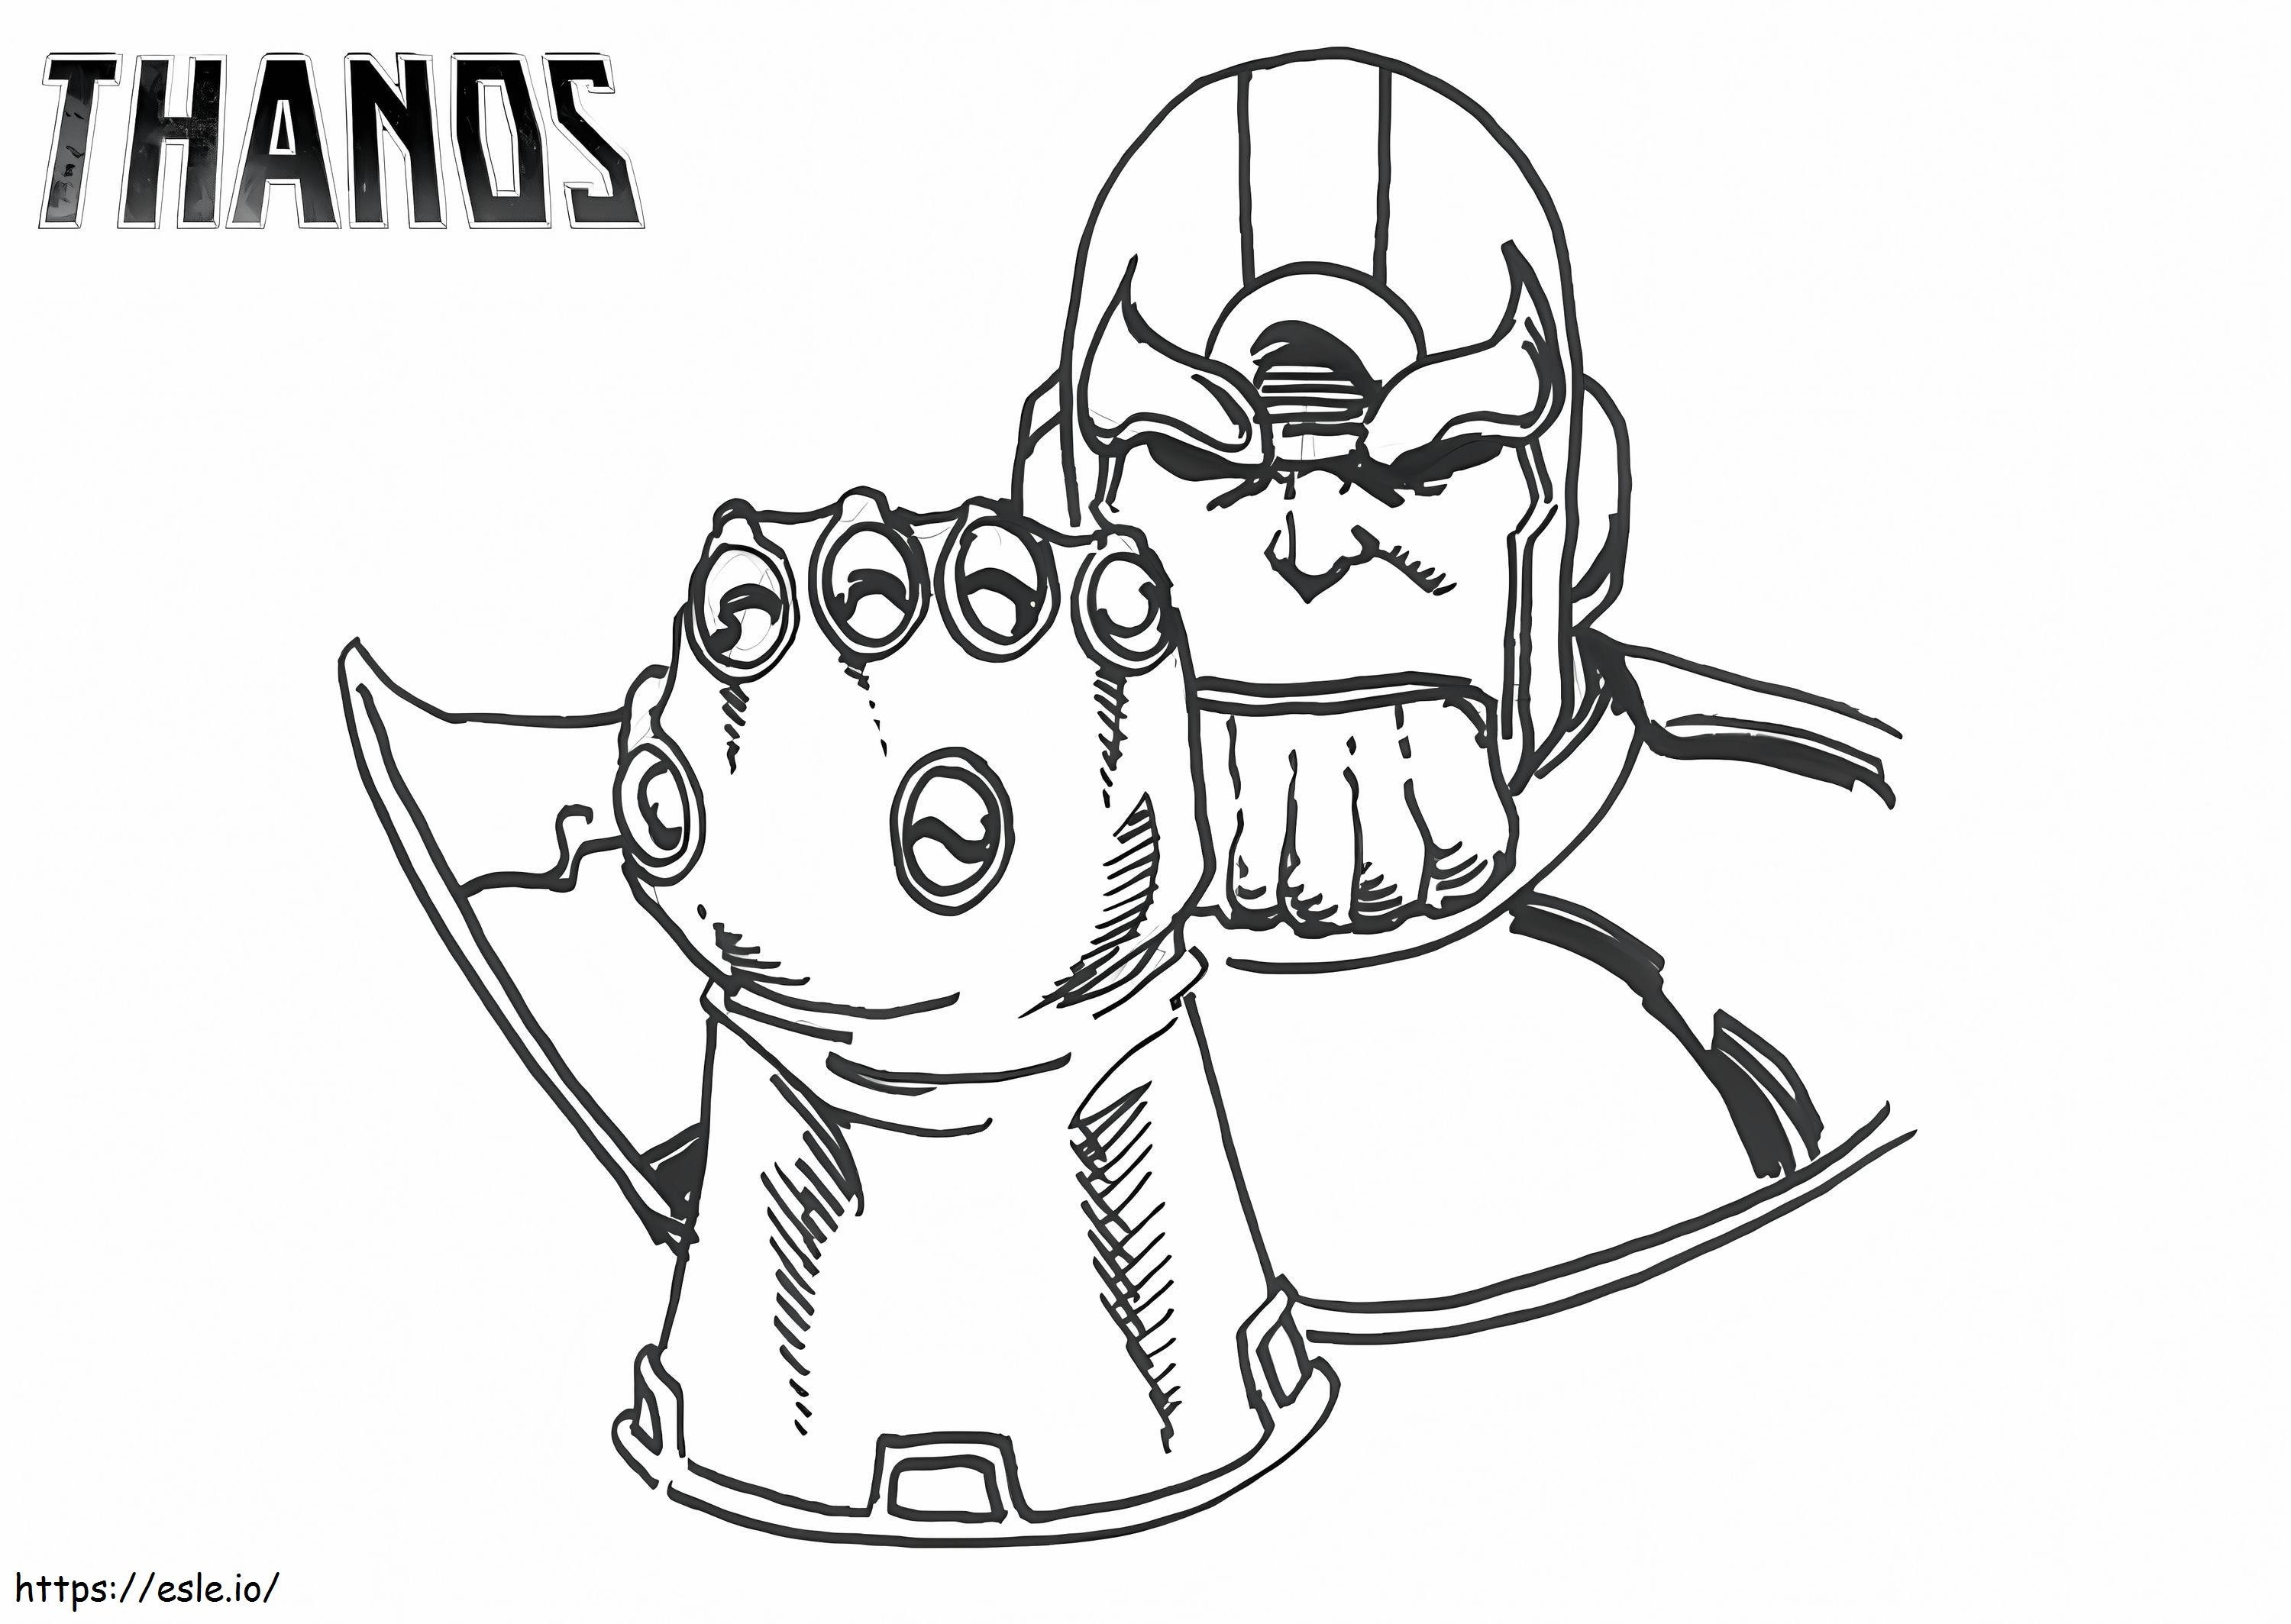 Thanos de bază cu mănușa infinitului de colorat